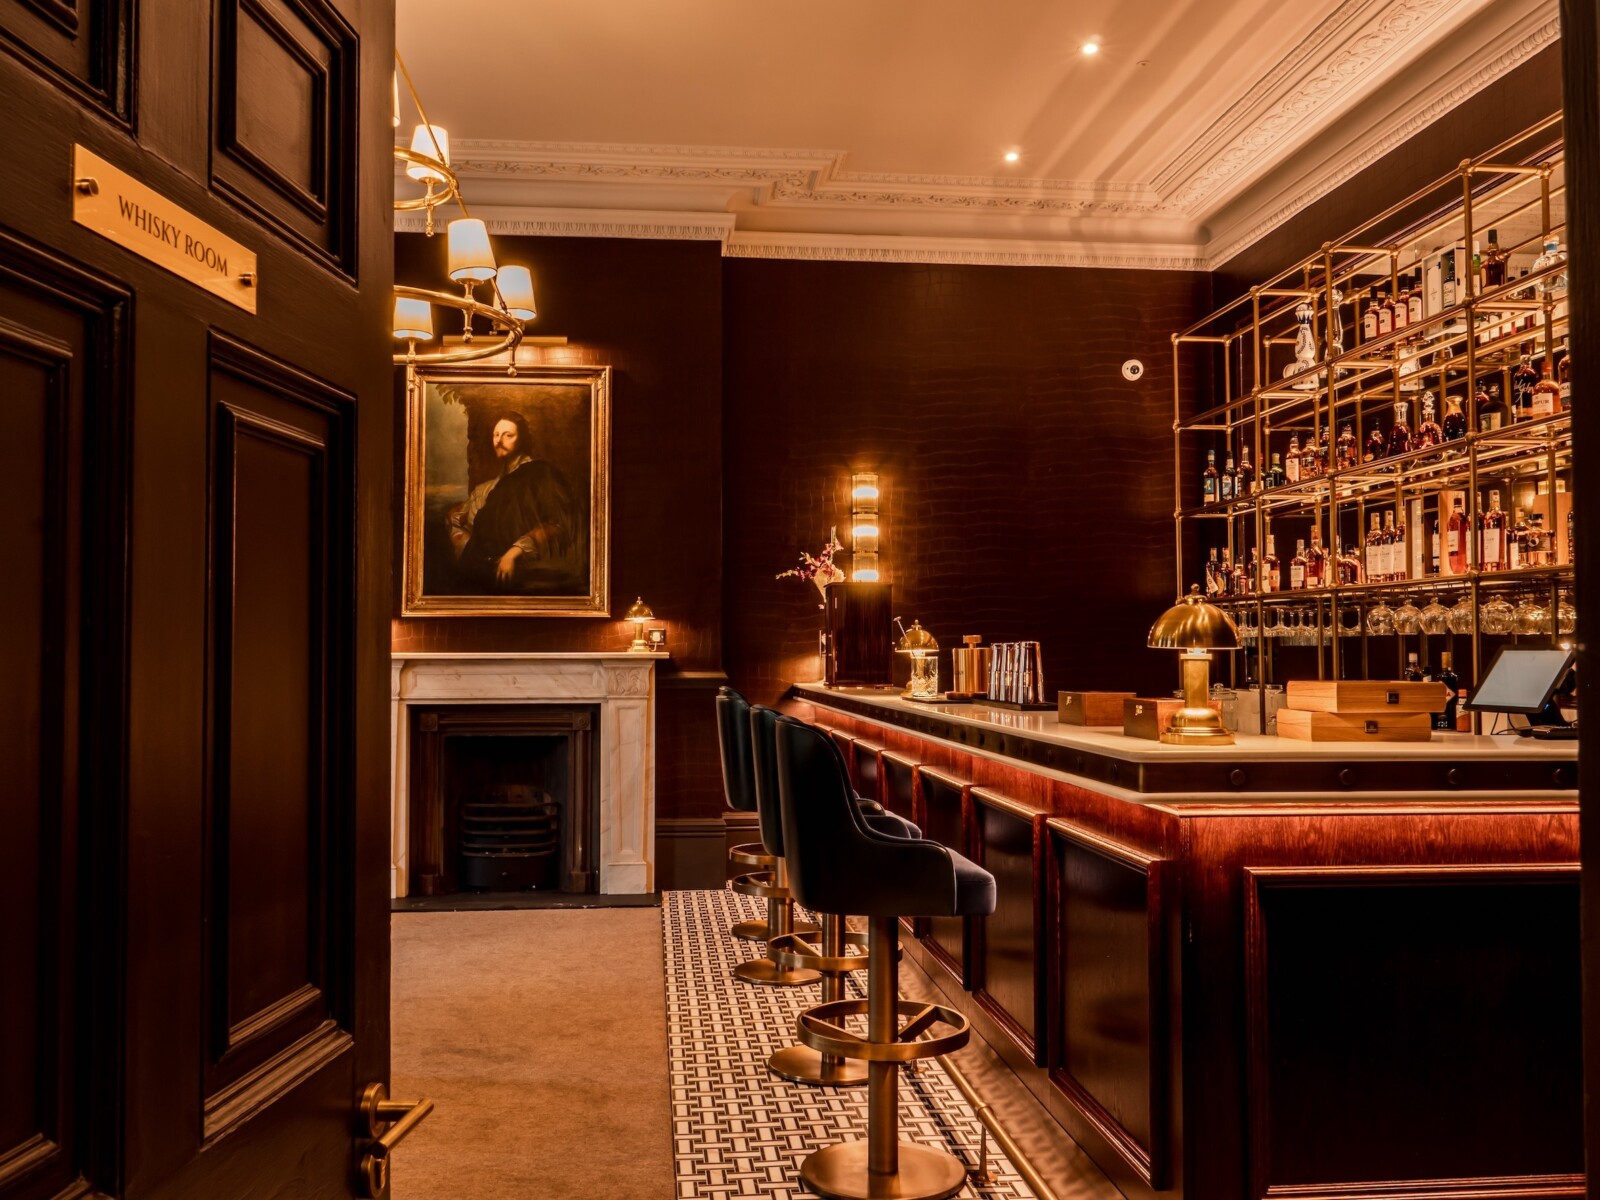 4 Whisky Room Buckinghamshire presenta una elegante renovación de su casa club por valor de £ 10 millones - Golf News